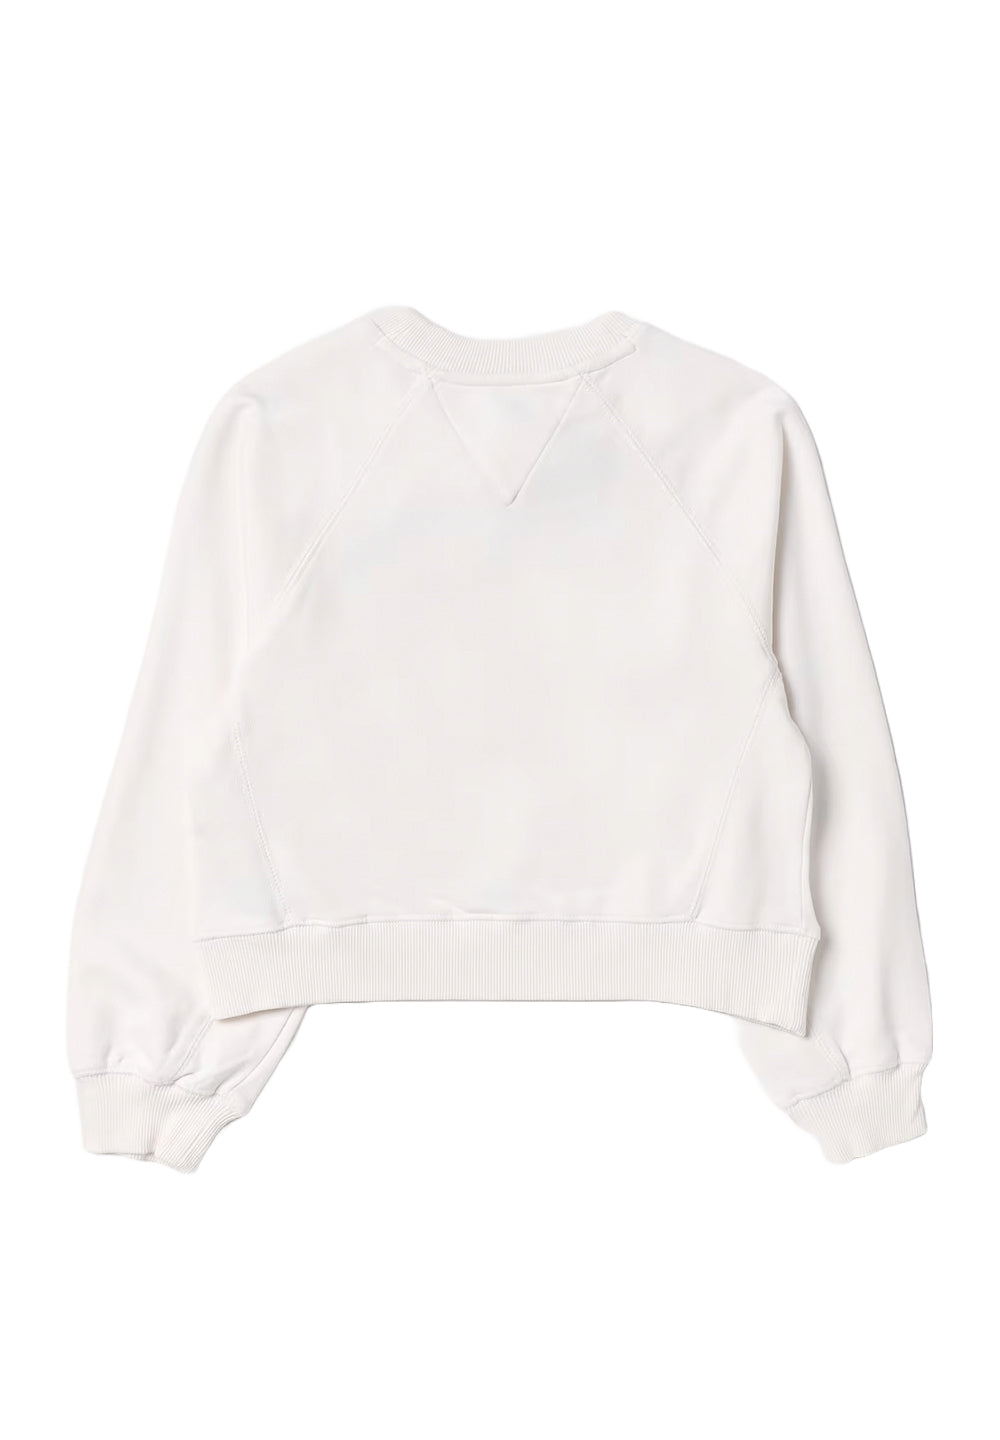 Weißes Sweatshirt mit Rundhalsausschnitt für Jungen